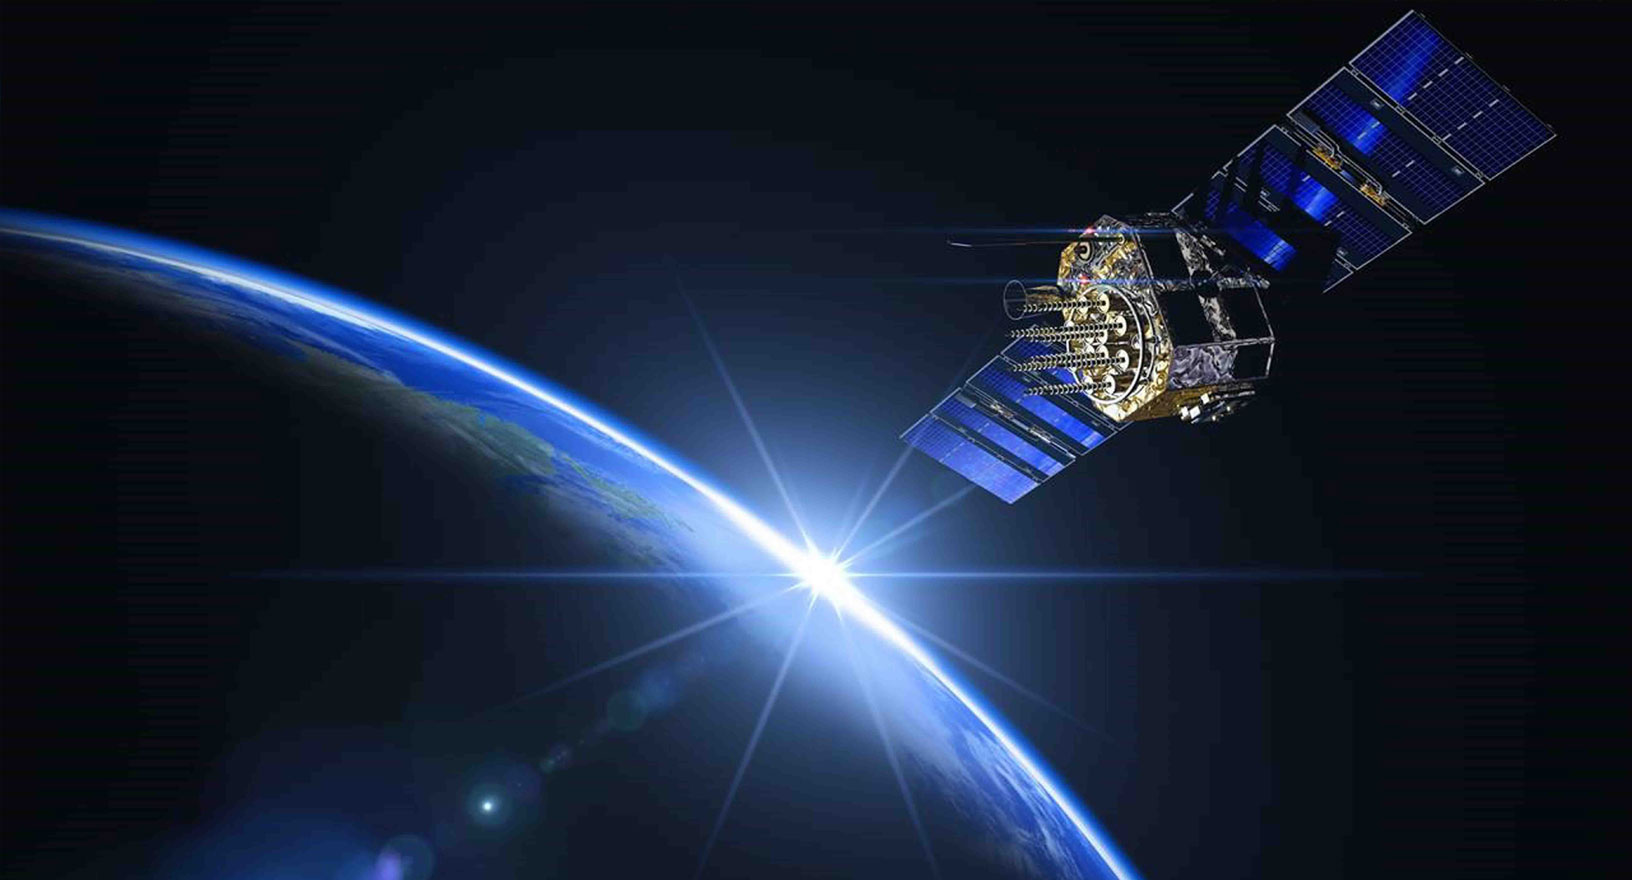 Imagen de un satélite del Sistema Global de Navegación por Satélite (GNSS) girando alrededor de la Tierra en el espacio.